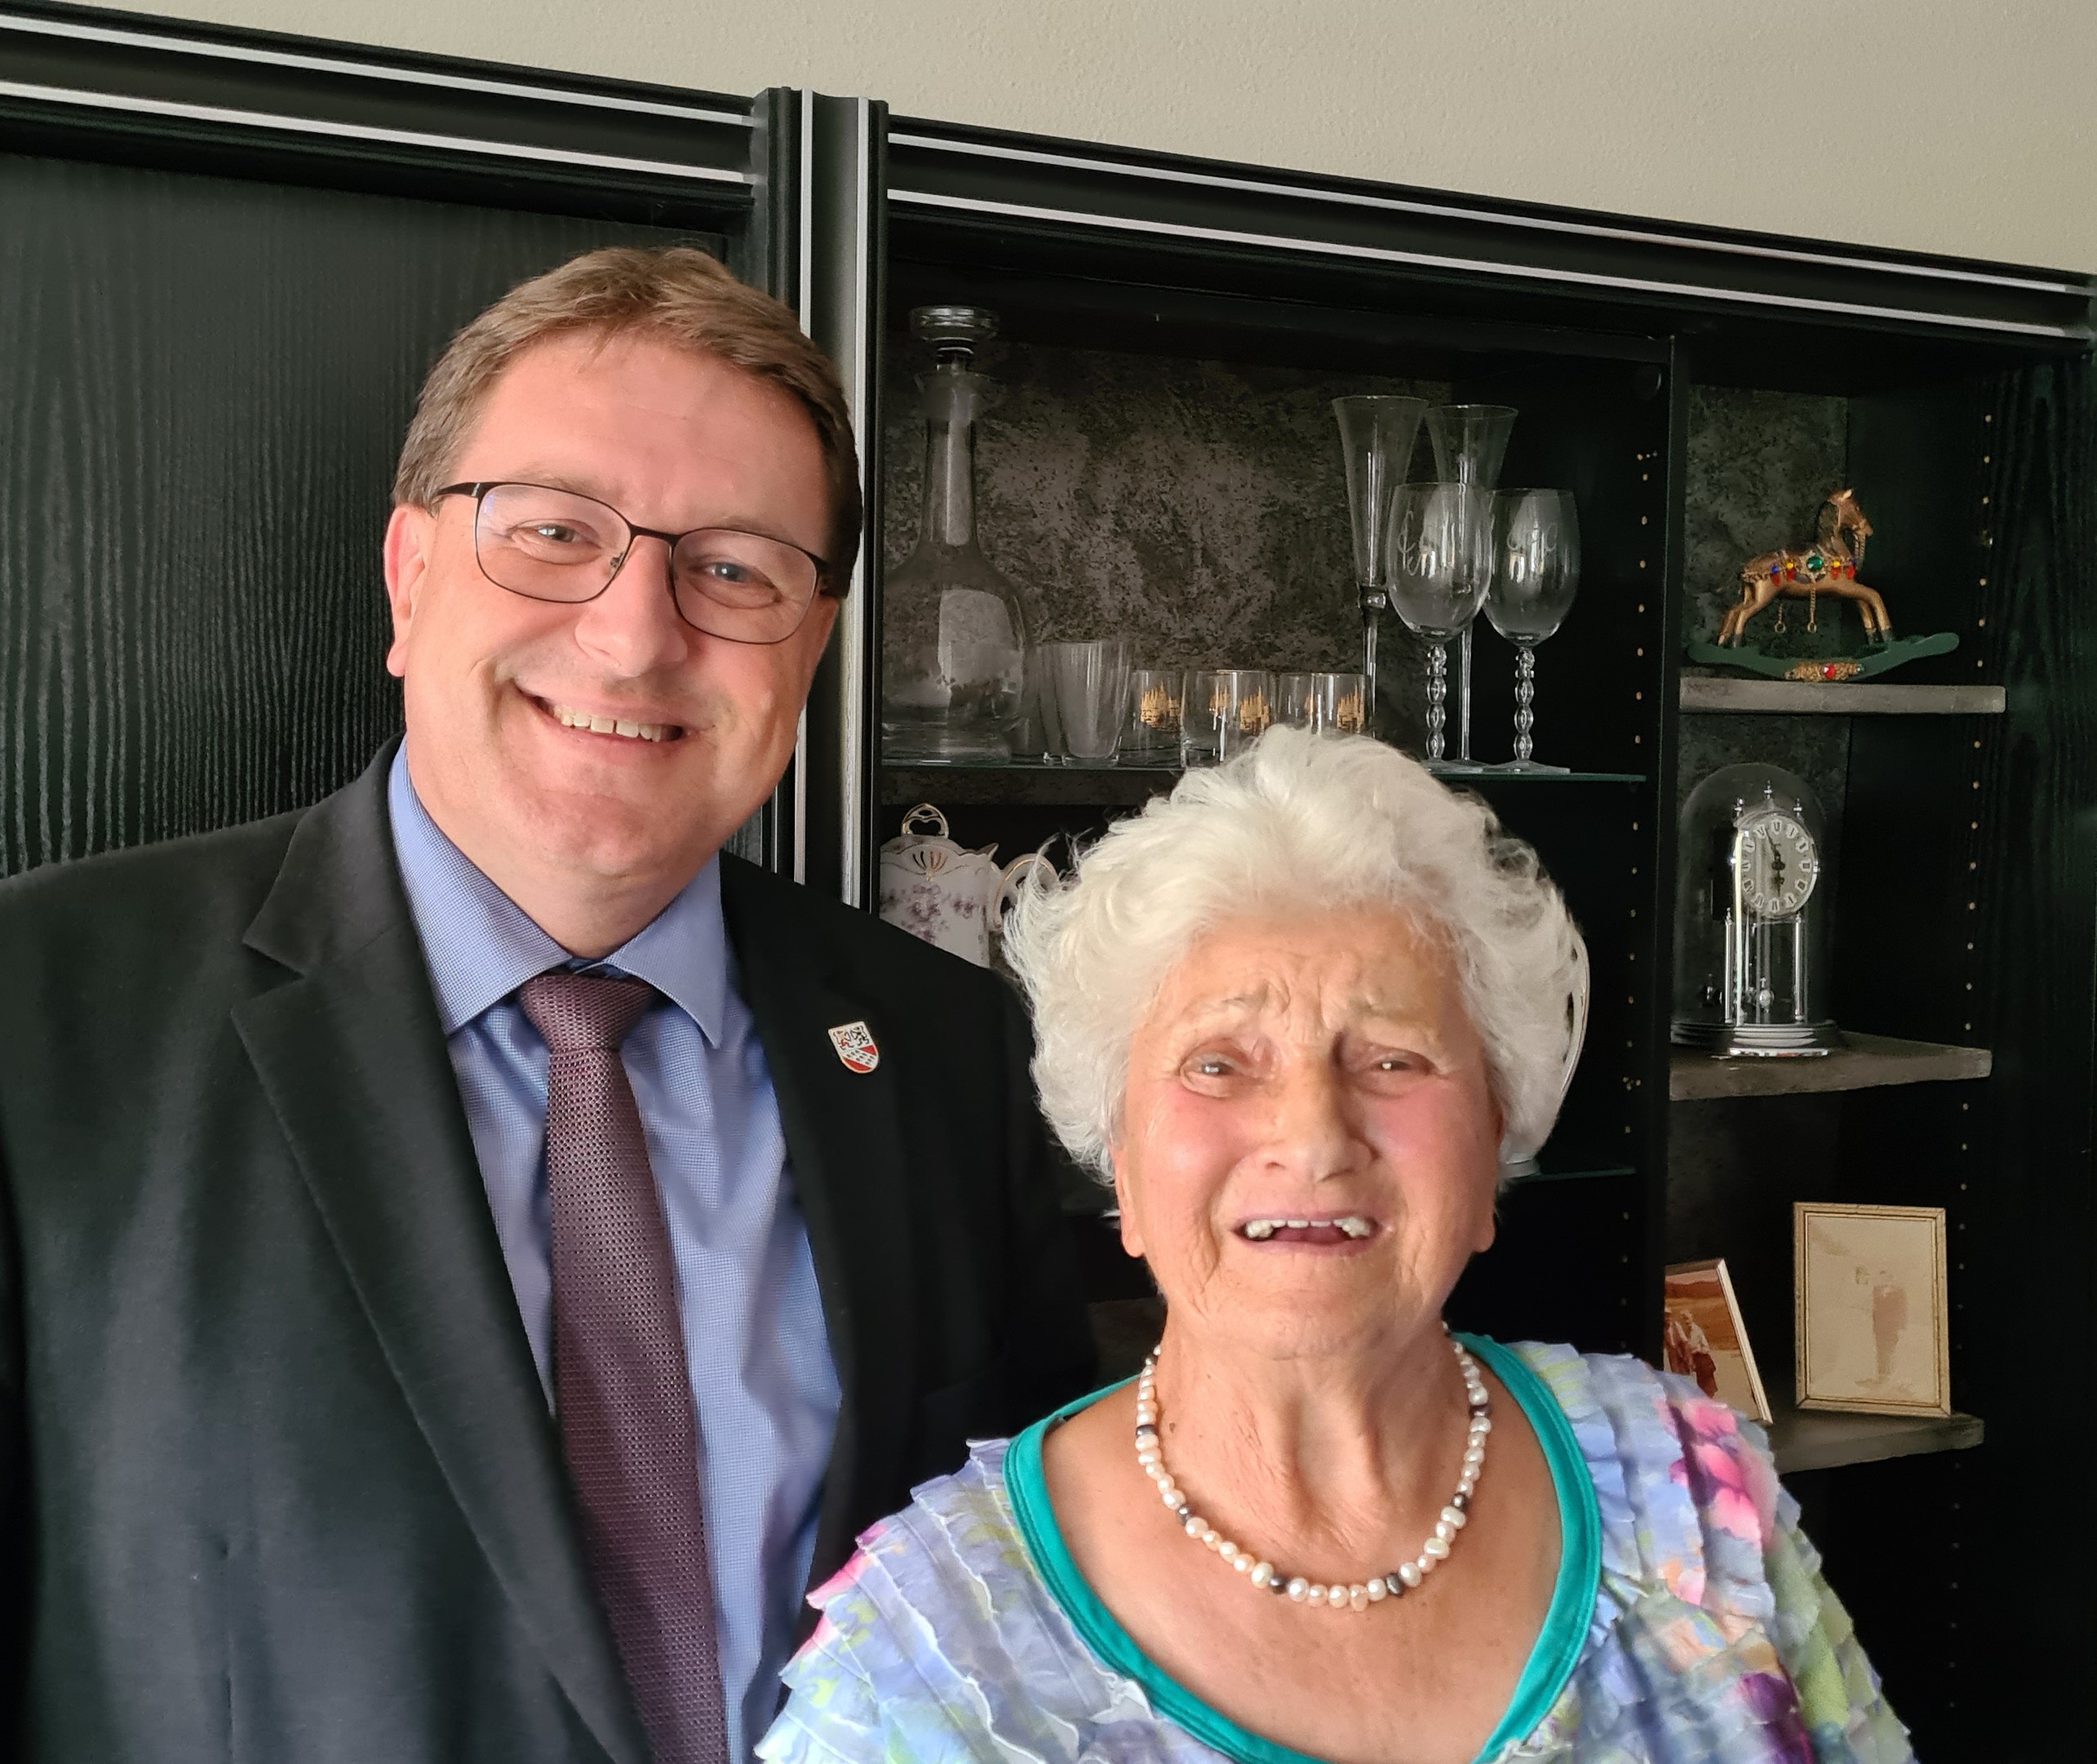 Am Dienstag 6. September 2022, durfte Frau Elisabeth Griesser ihren 90. Geburtstag feiern.
Die Gemeindebehörden gratulieren herzlich dazu! 